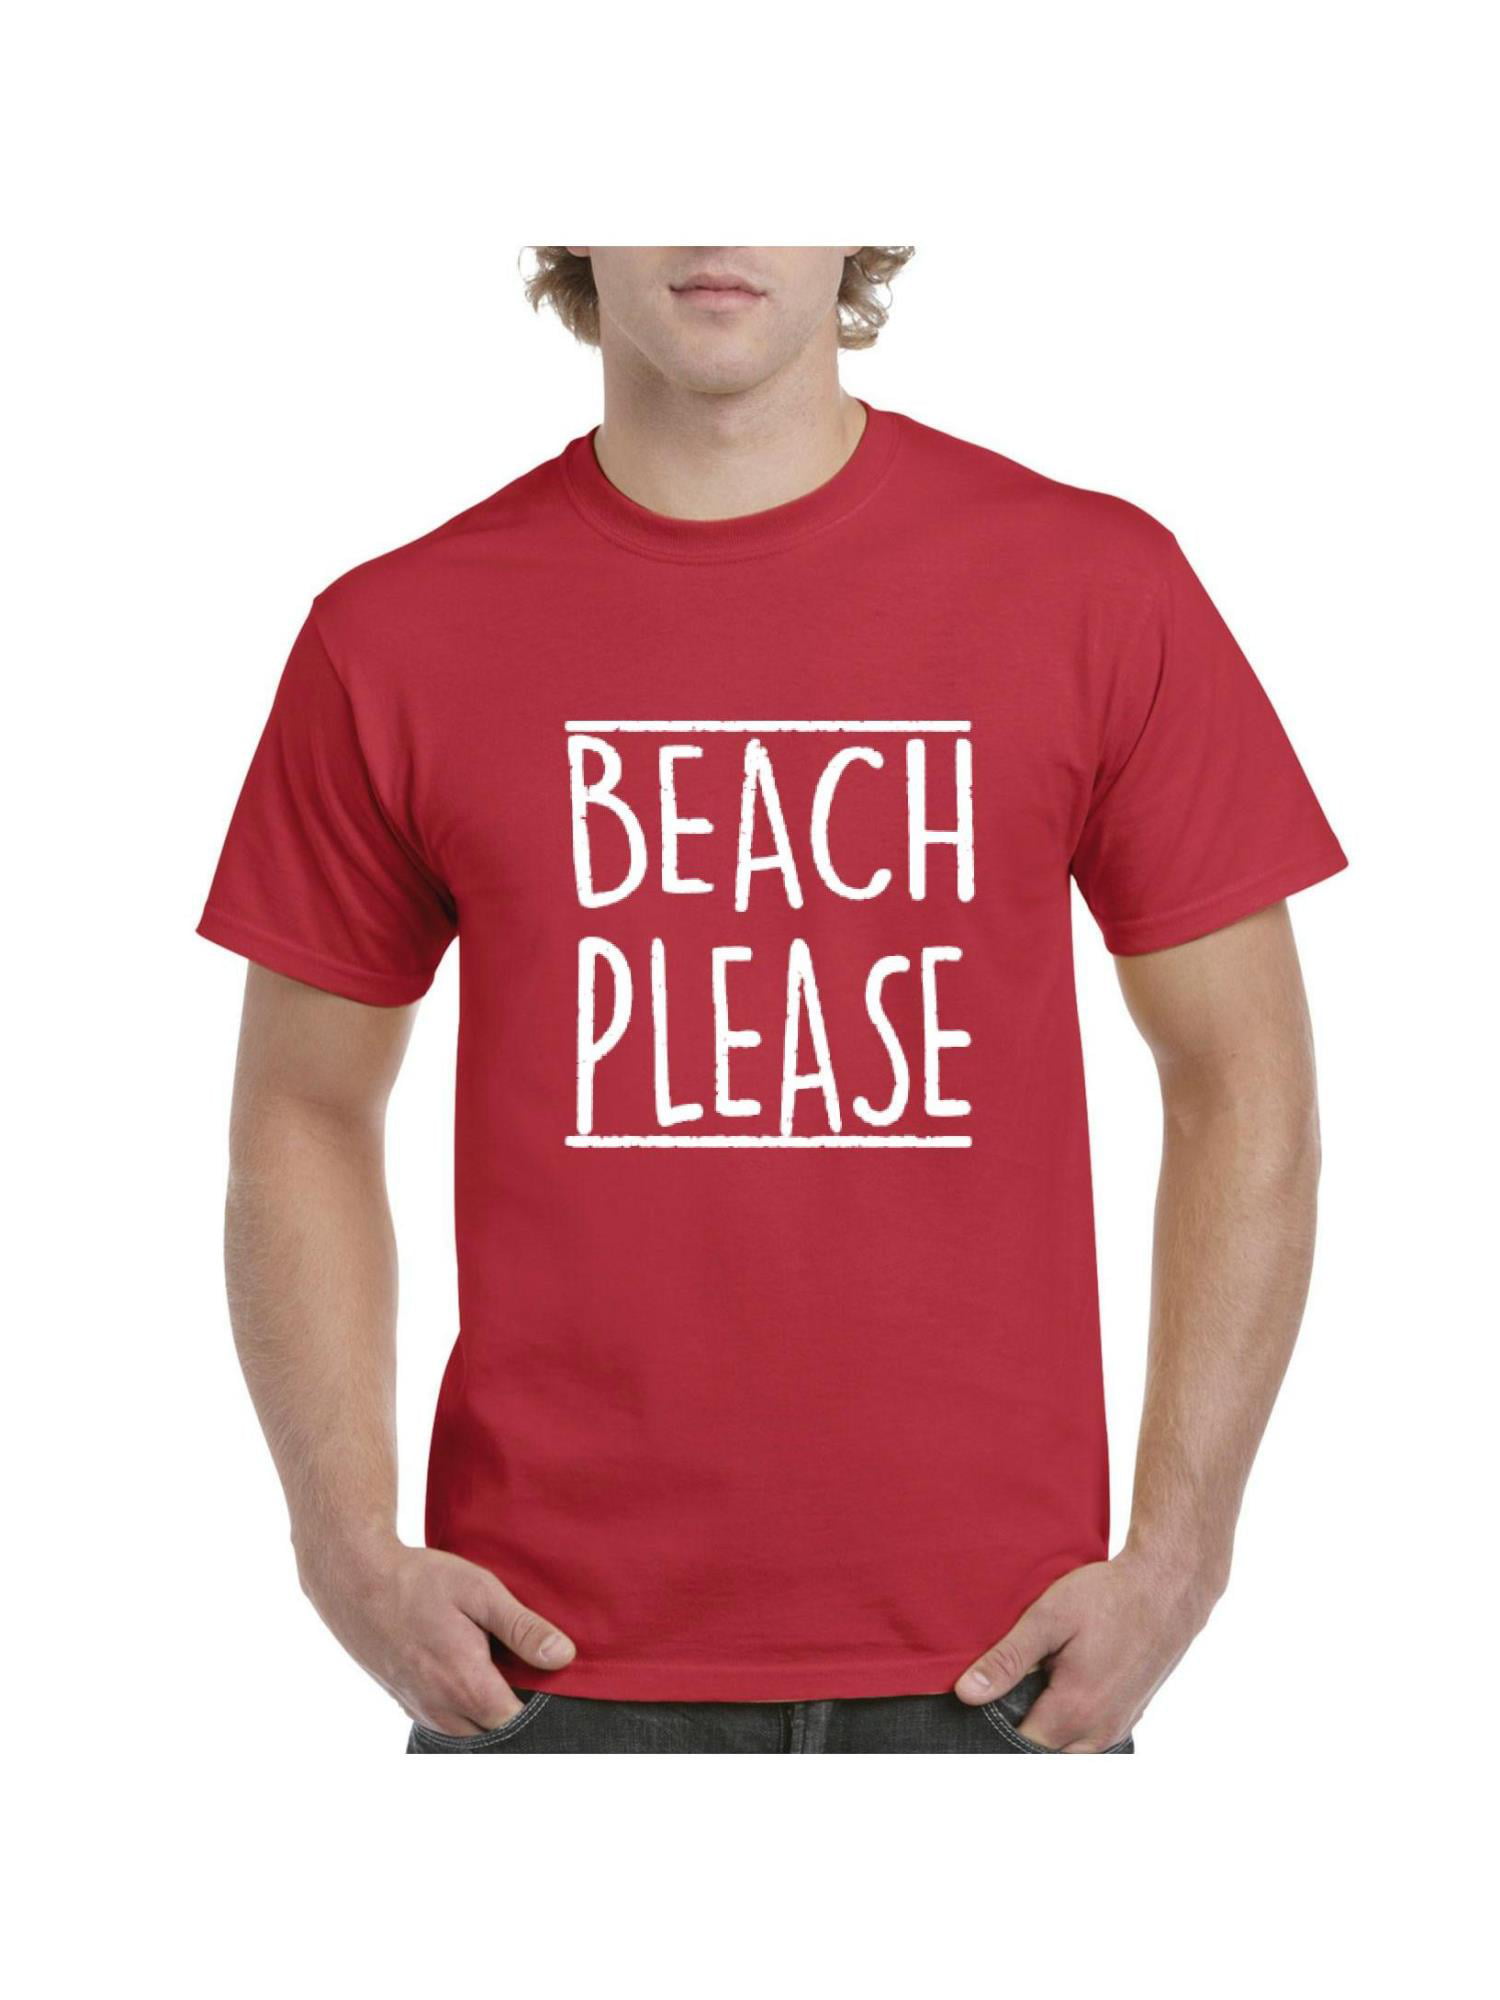 IWPF - Mens Beach Please Short Sleeve T-Shirt - Walmart.com - Walmart.com